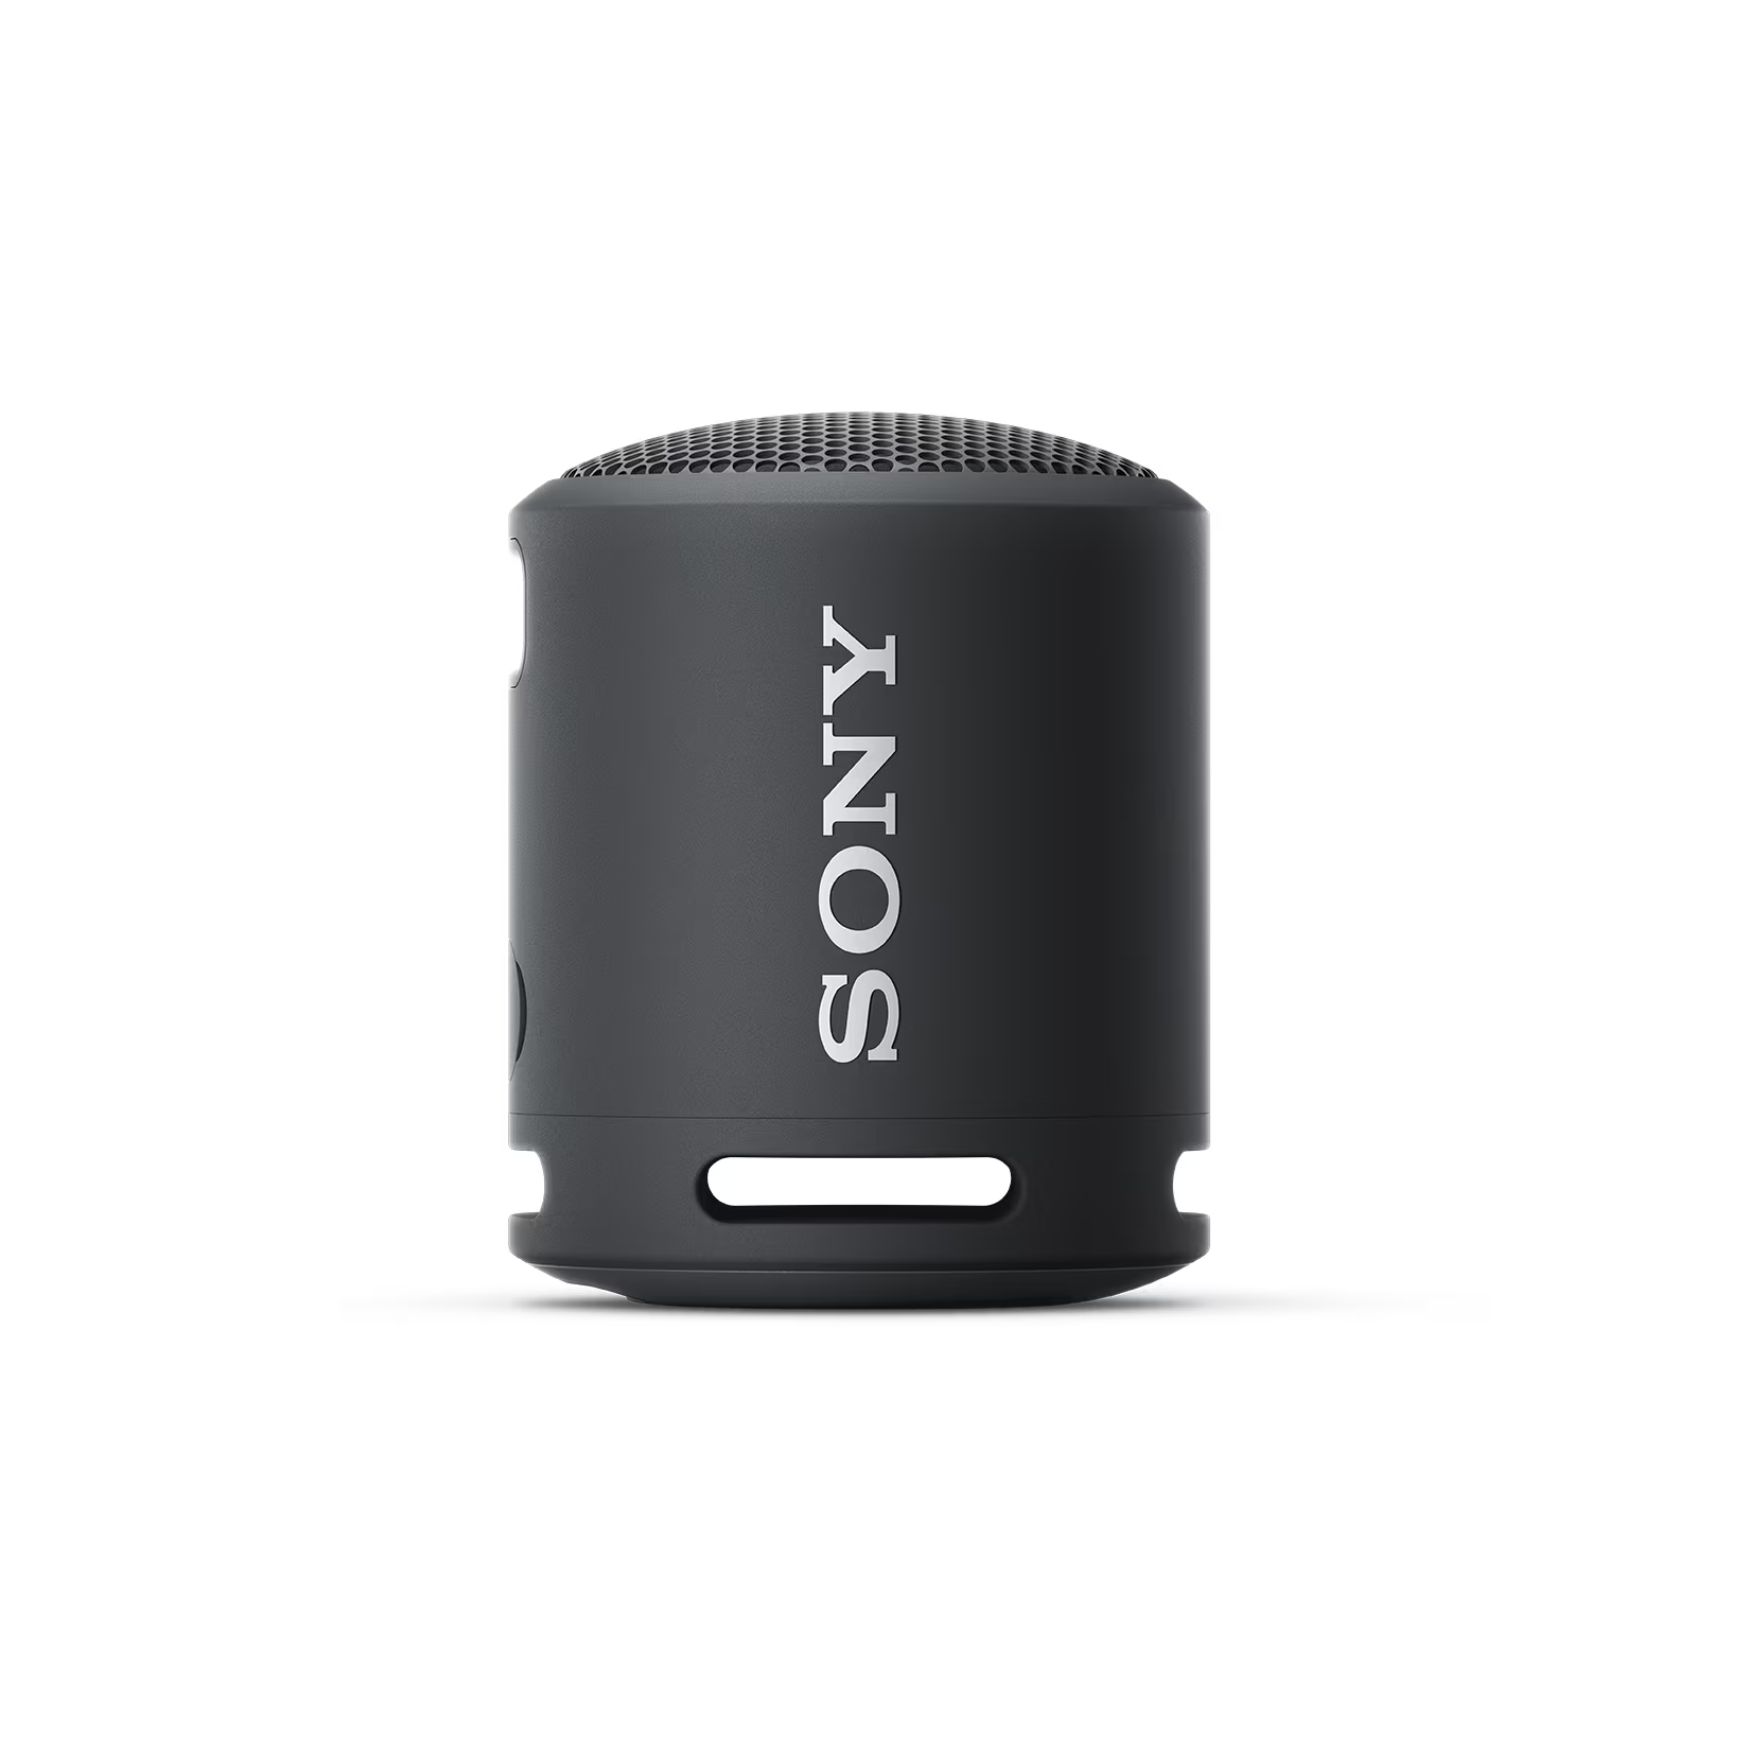 Sony SRS-XB13 EXTRA BASS™ Portable Wireless Speaker / Waterproof & Dustproof with IP67 Rating (1 Year Warranty)